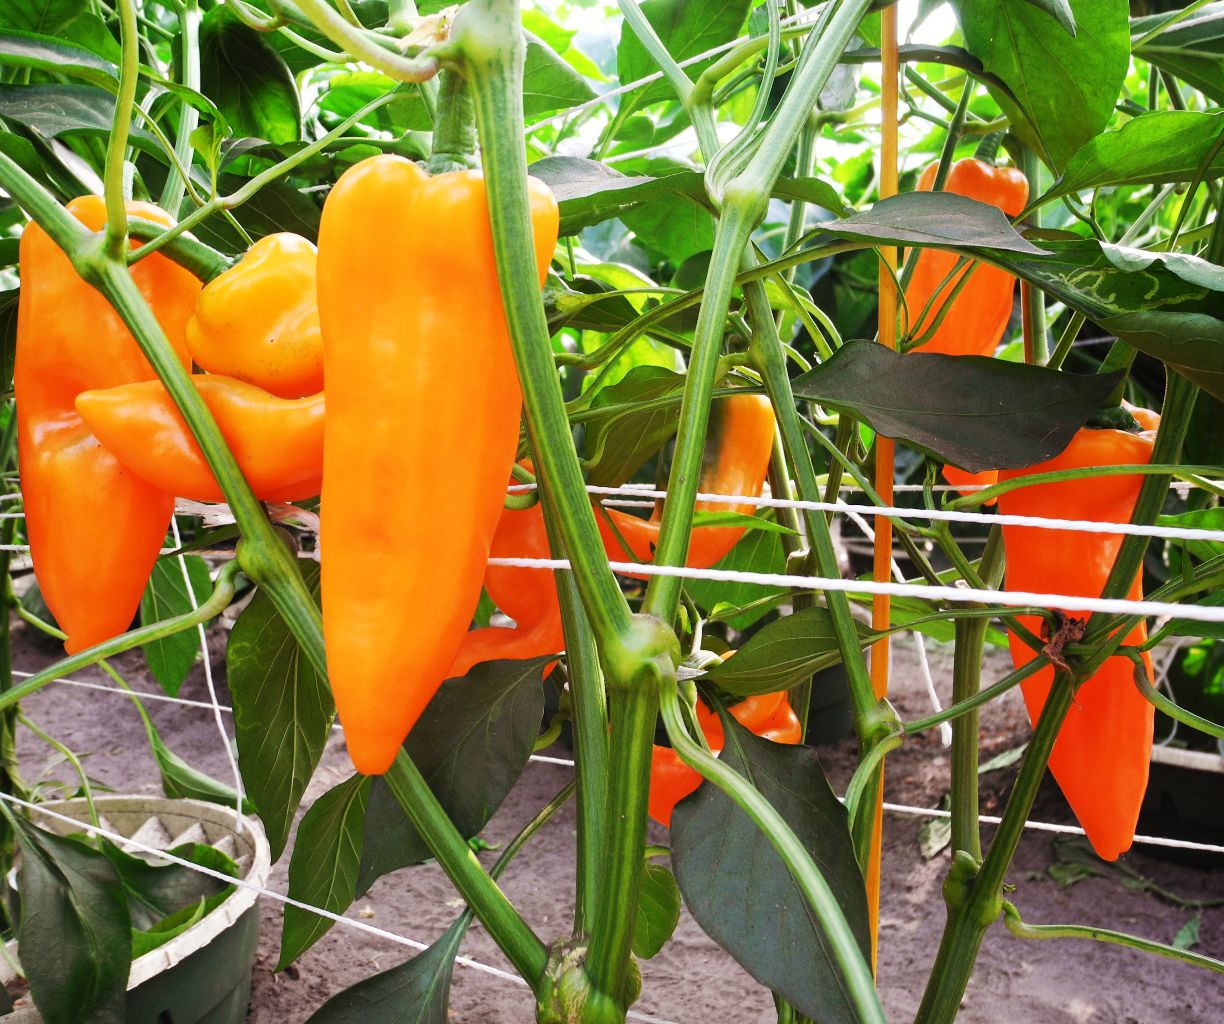 Cultivar hortalizas sostenibles en el Waterboxx plant cocoon de una manera eficiente